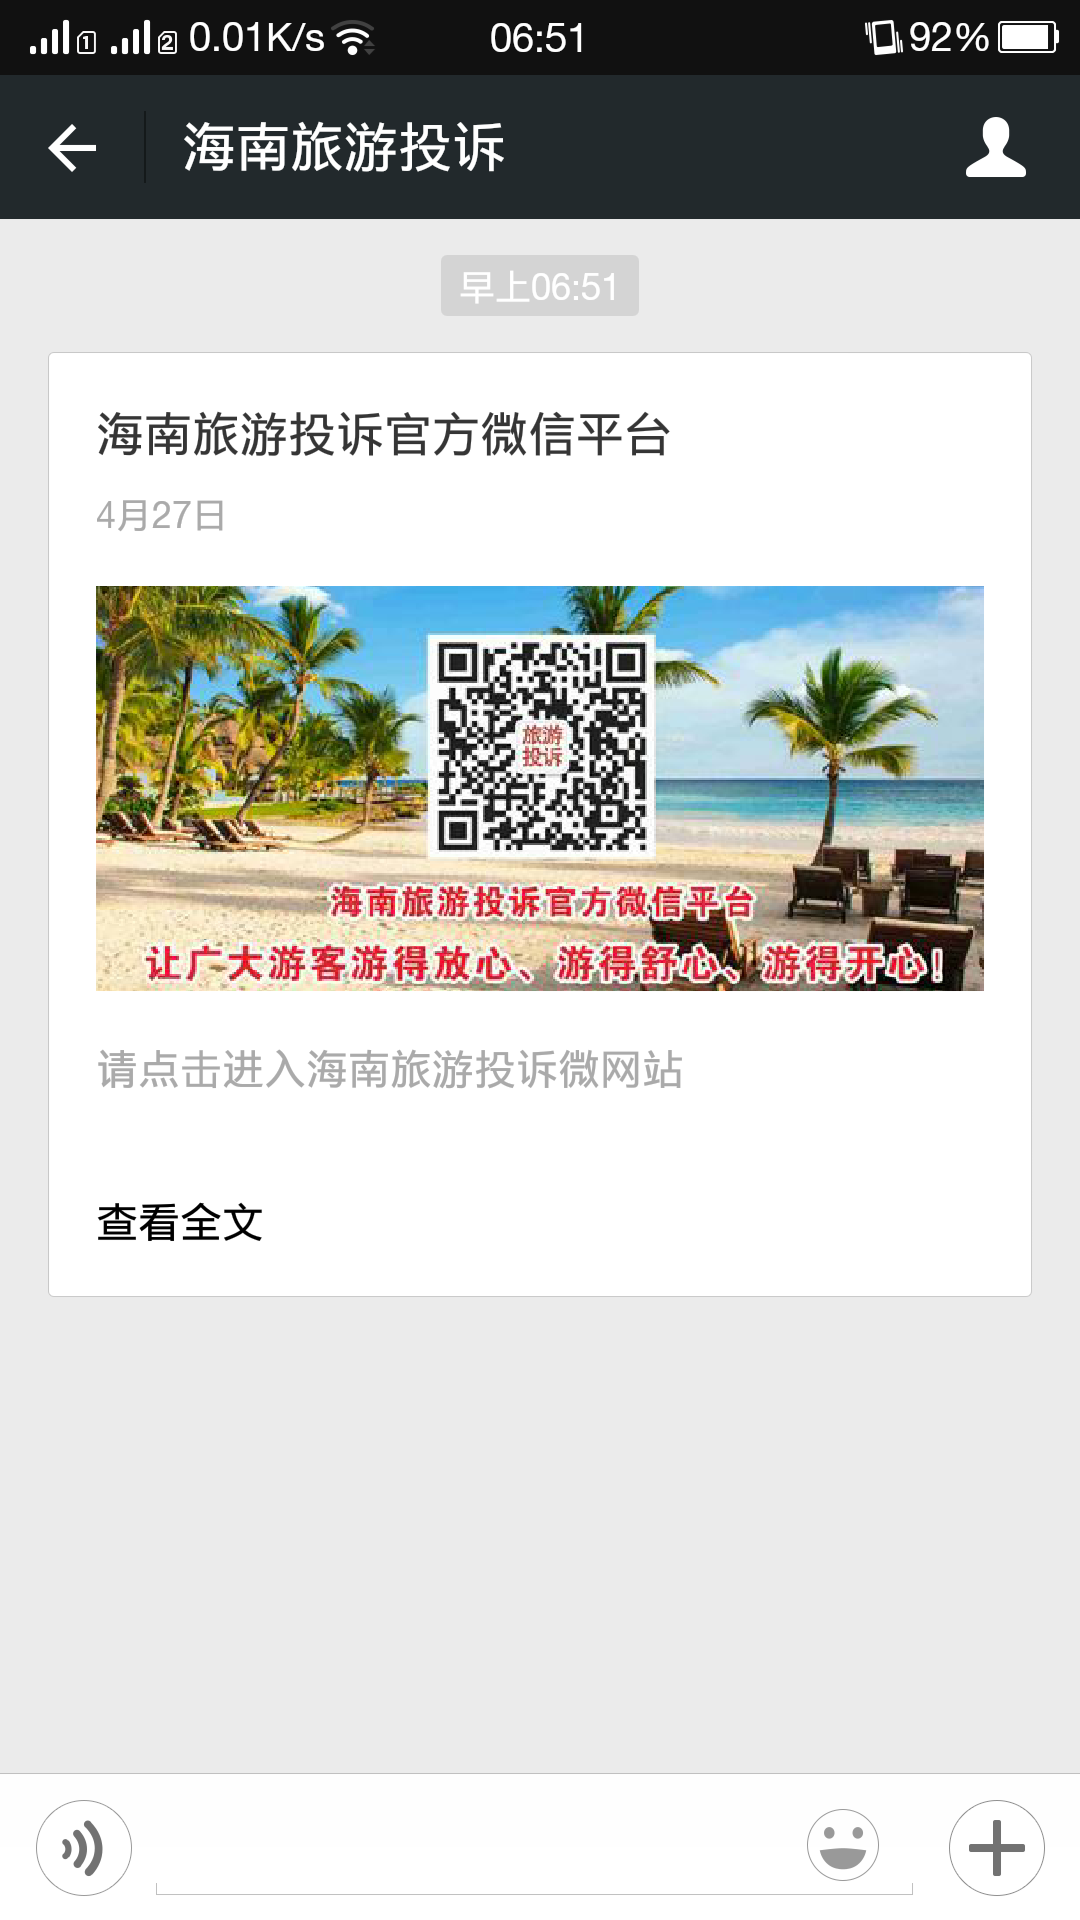 海南旅游投诉微信平台开通 可选择南海网等10个渠道维权